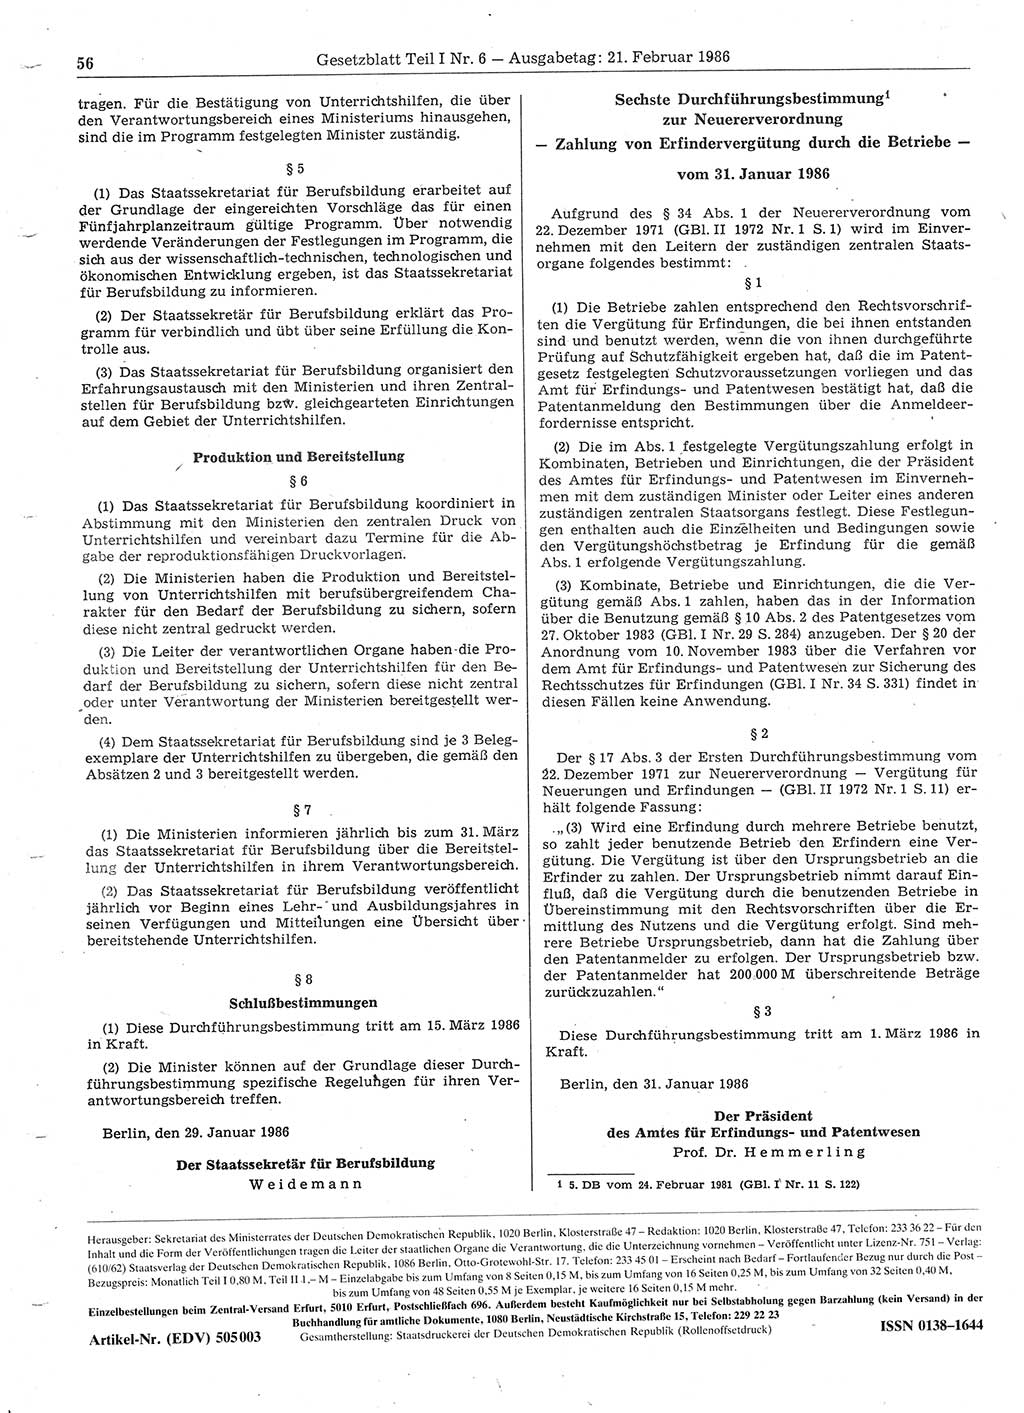 Gesetzblatt (GBl.) der Deutschen Demokratischen Republik (DDR) Teil Ⅰ 1986, Seite 56 (GBl. DDR Ⅰ 1986, S. 56)